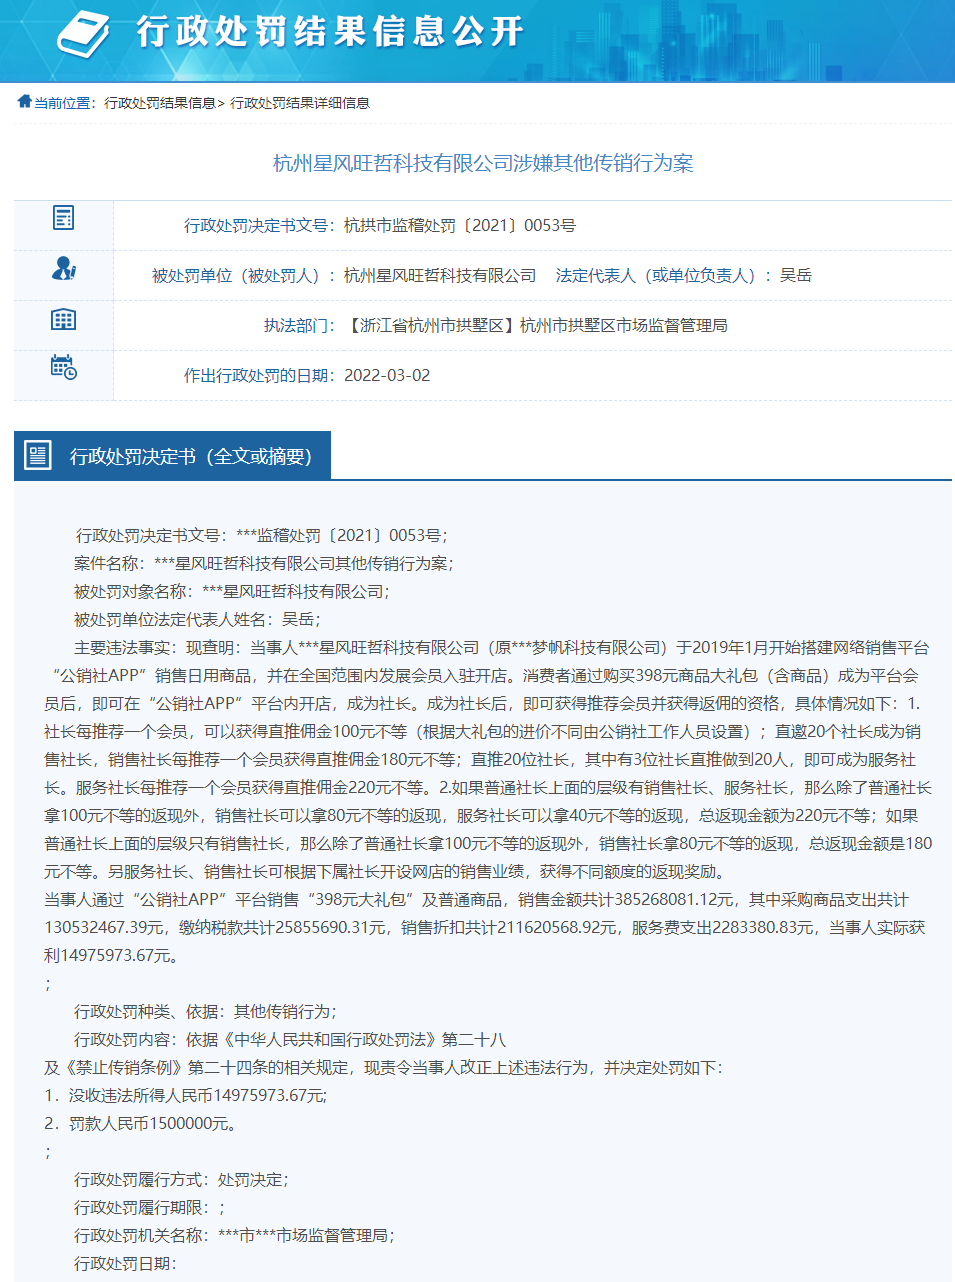 “公销社APP涉嫌传销被查处 运营主体杭州星风旺哲被没收违法所得1497.59万元